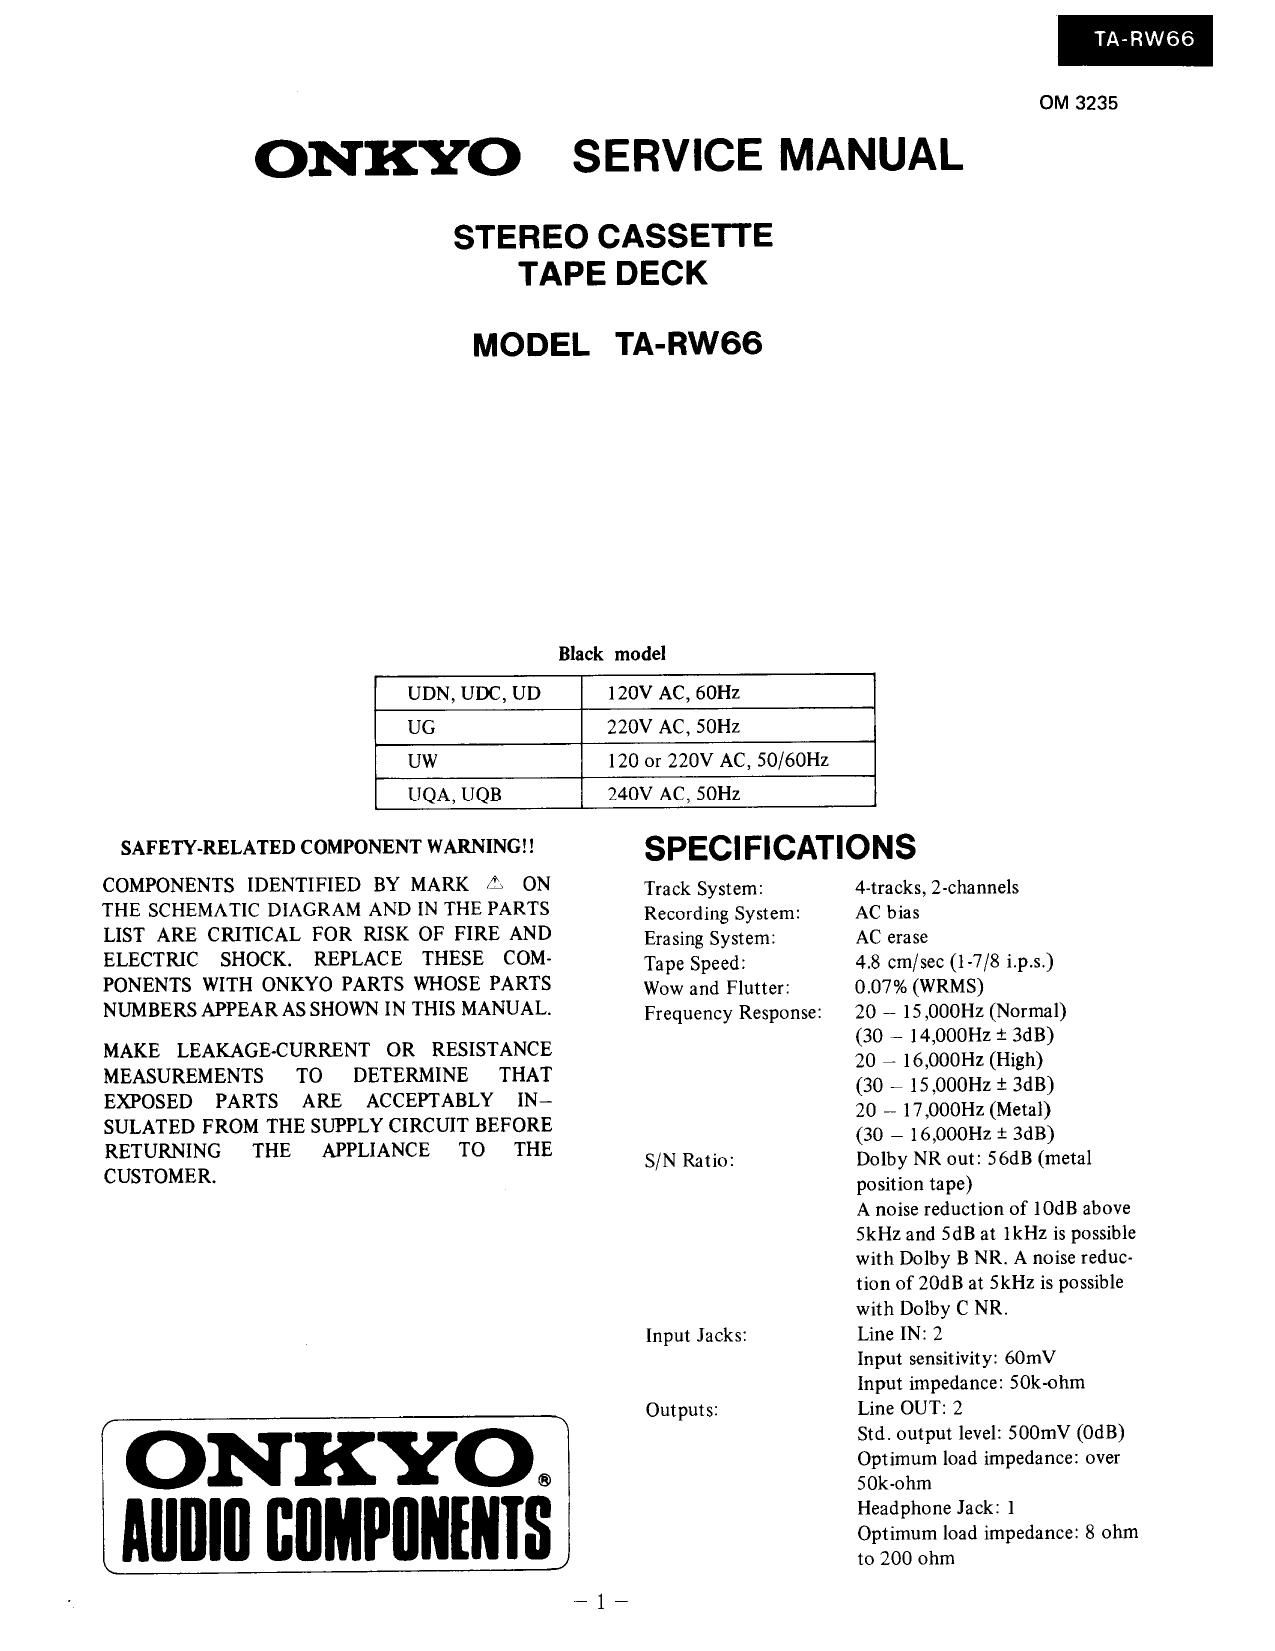 Onkyo TARW 66 Service Manual